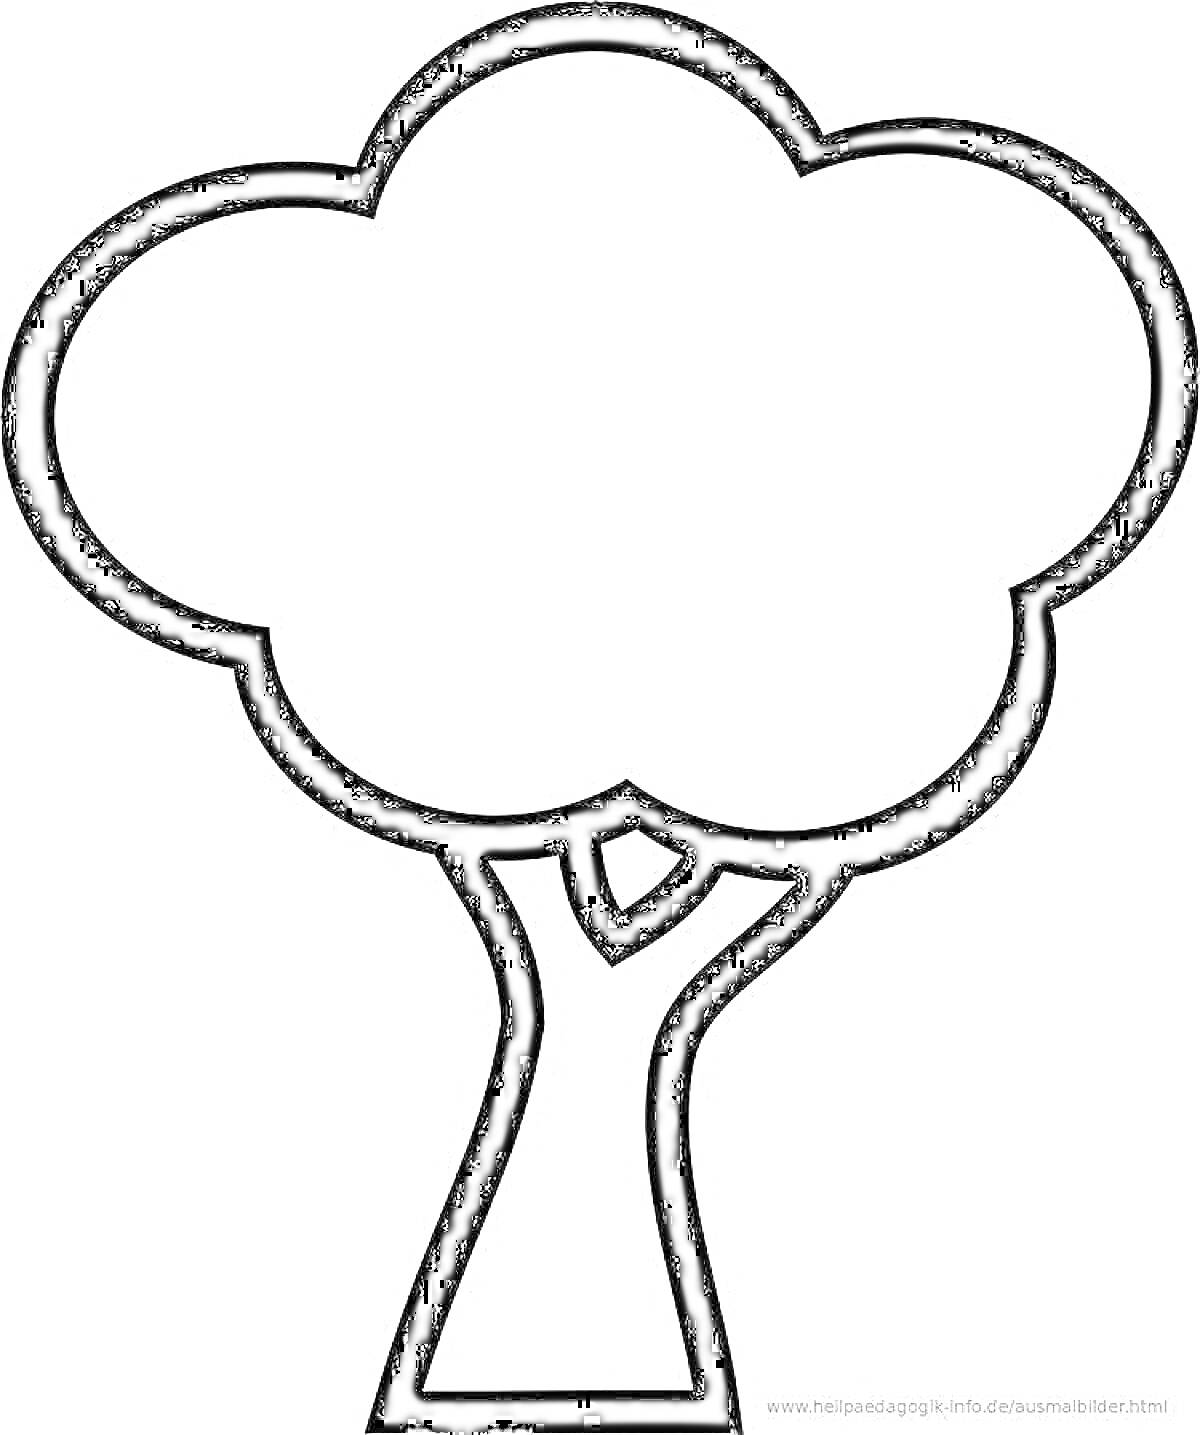 Раскраска Дерево для раскрашивания (контурное изображение дерева с кроной и стволом)